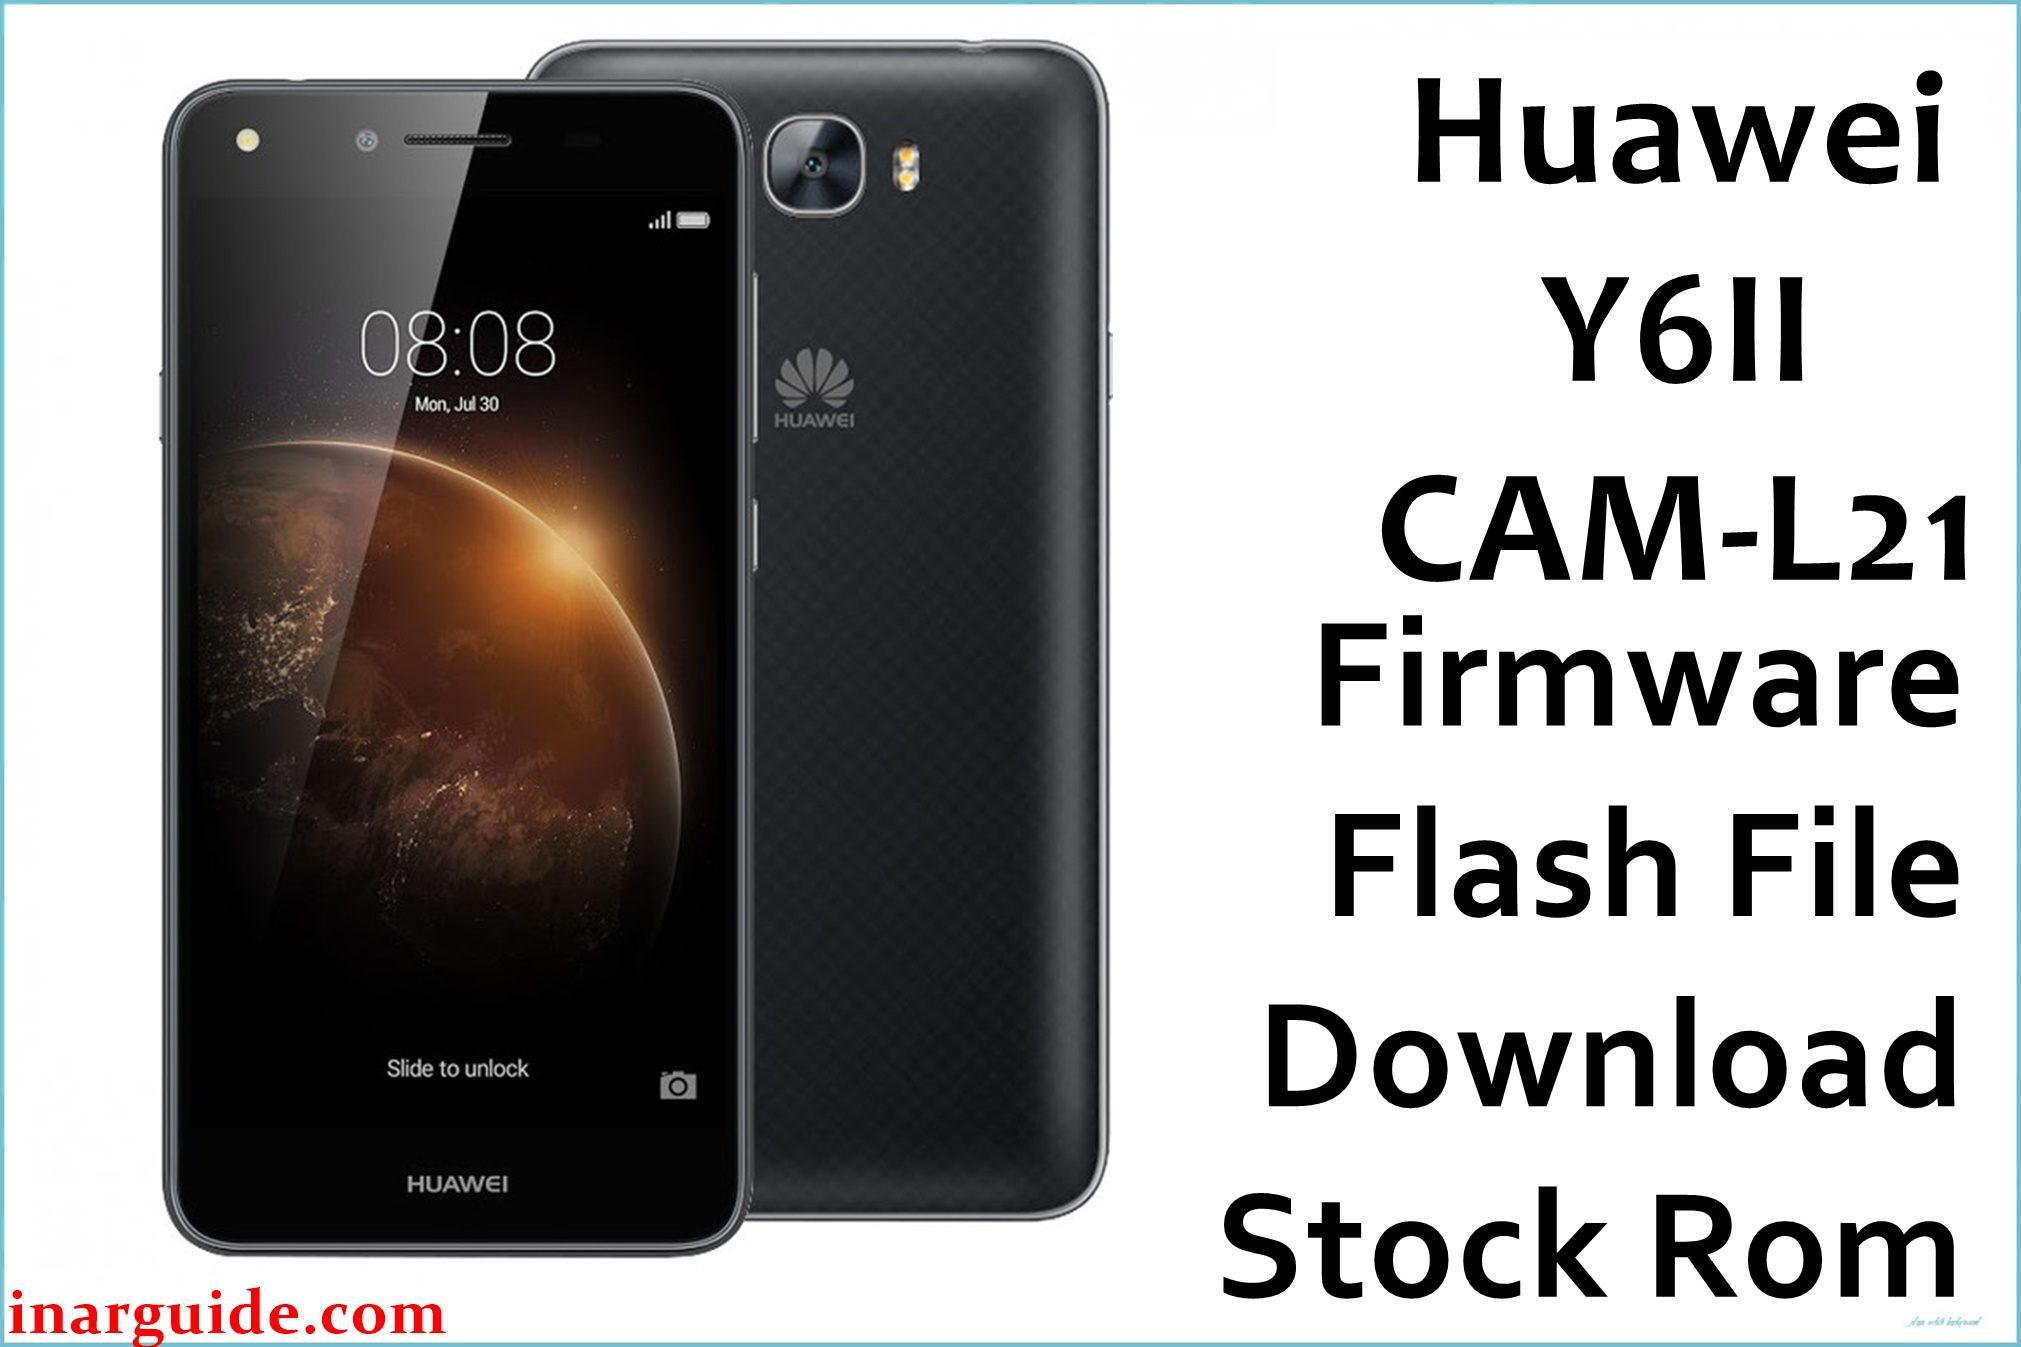 Huawei Y6II CAM L21